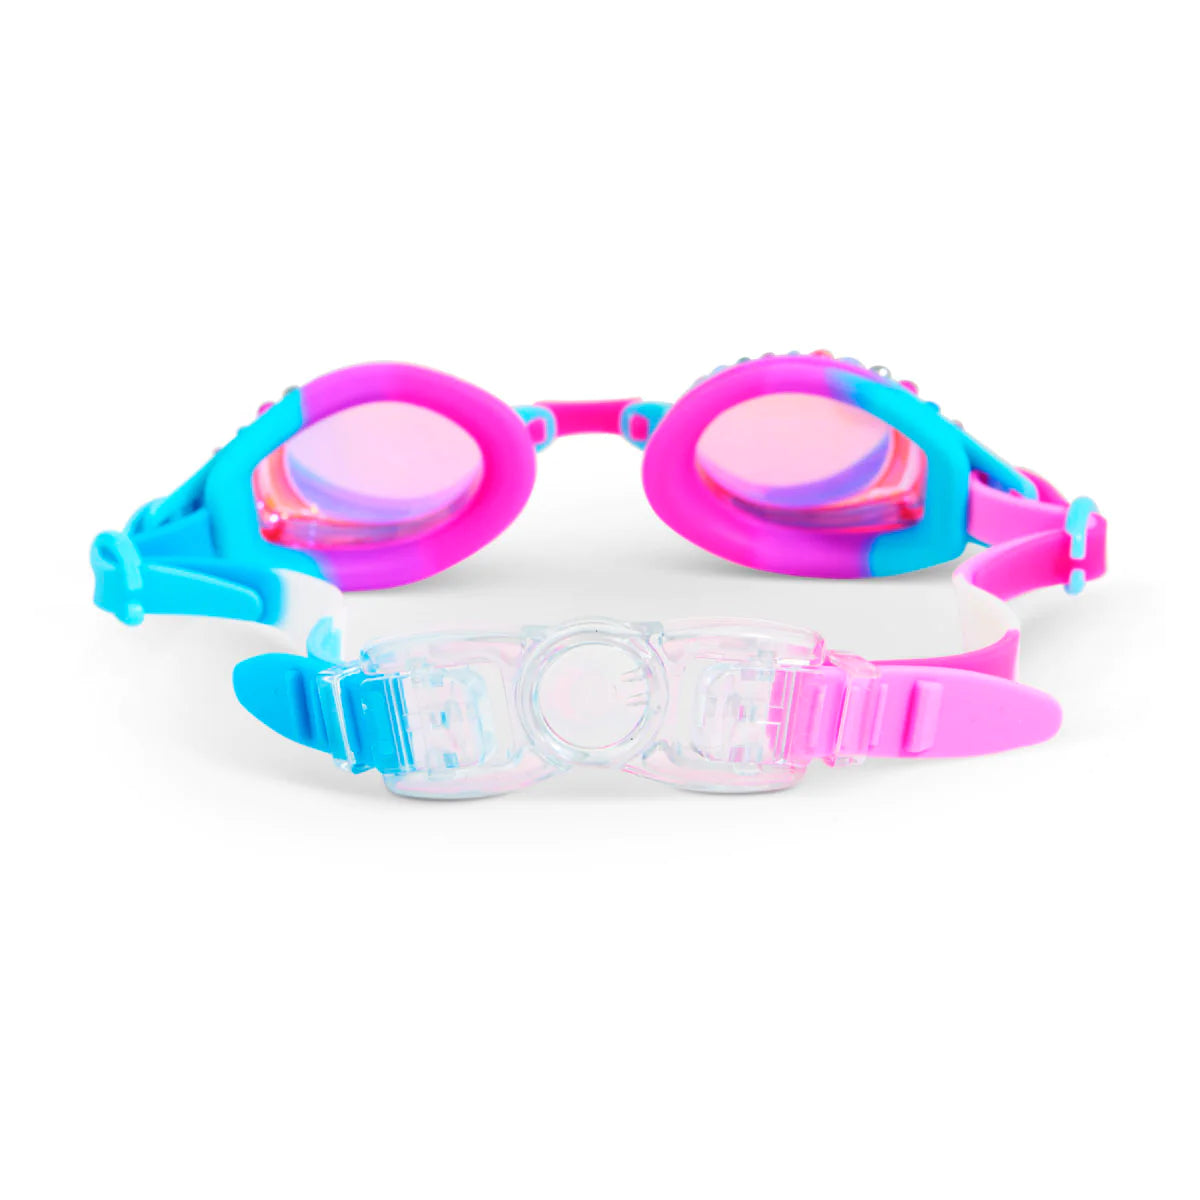 Crystal Violet Glimmering Gemstone Swim Goggles  - Doodlebug's Children's Boutique